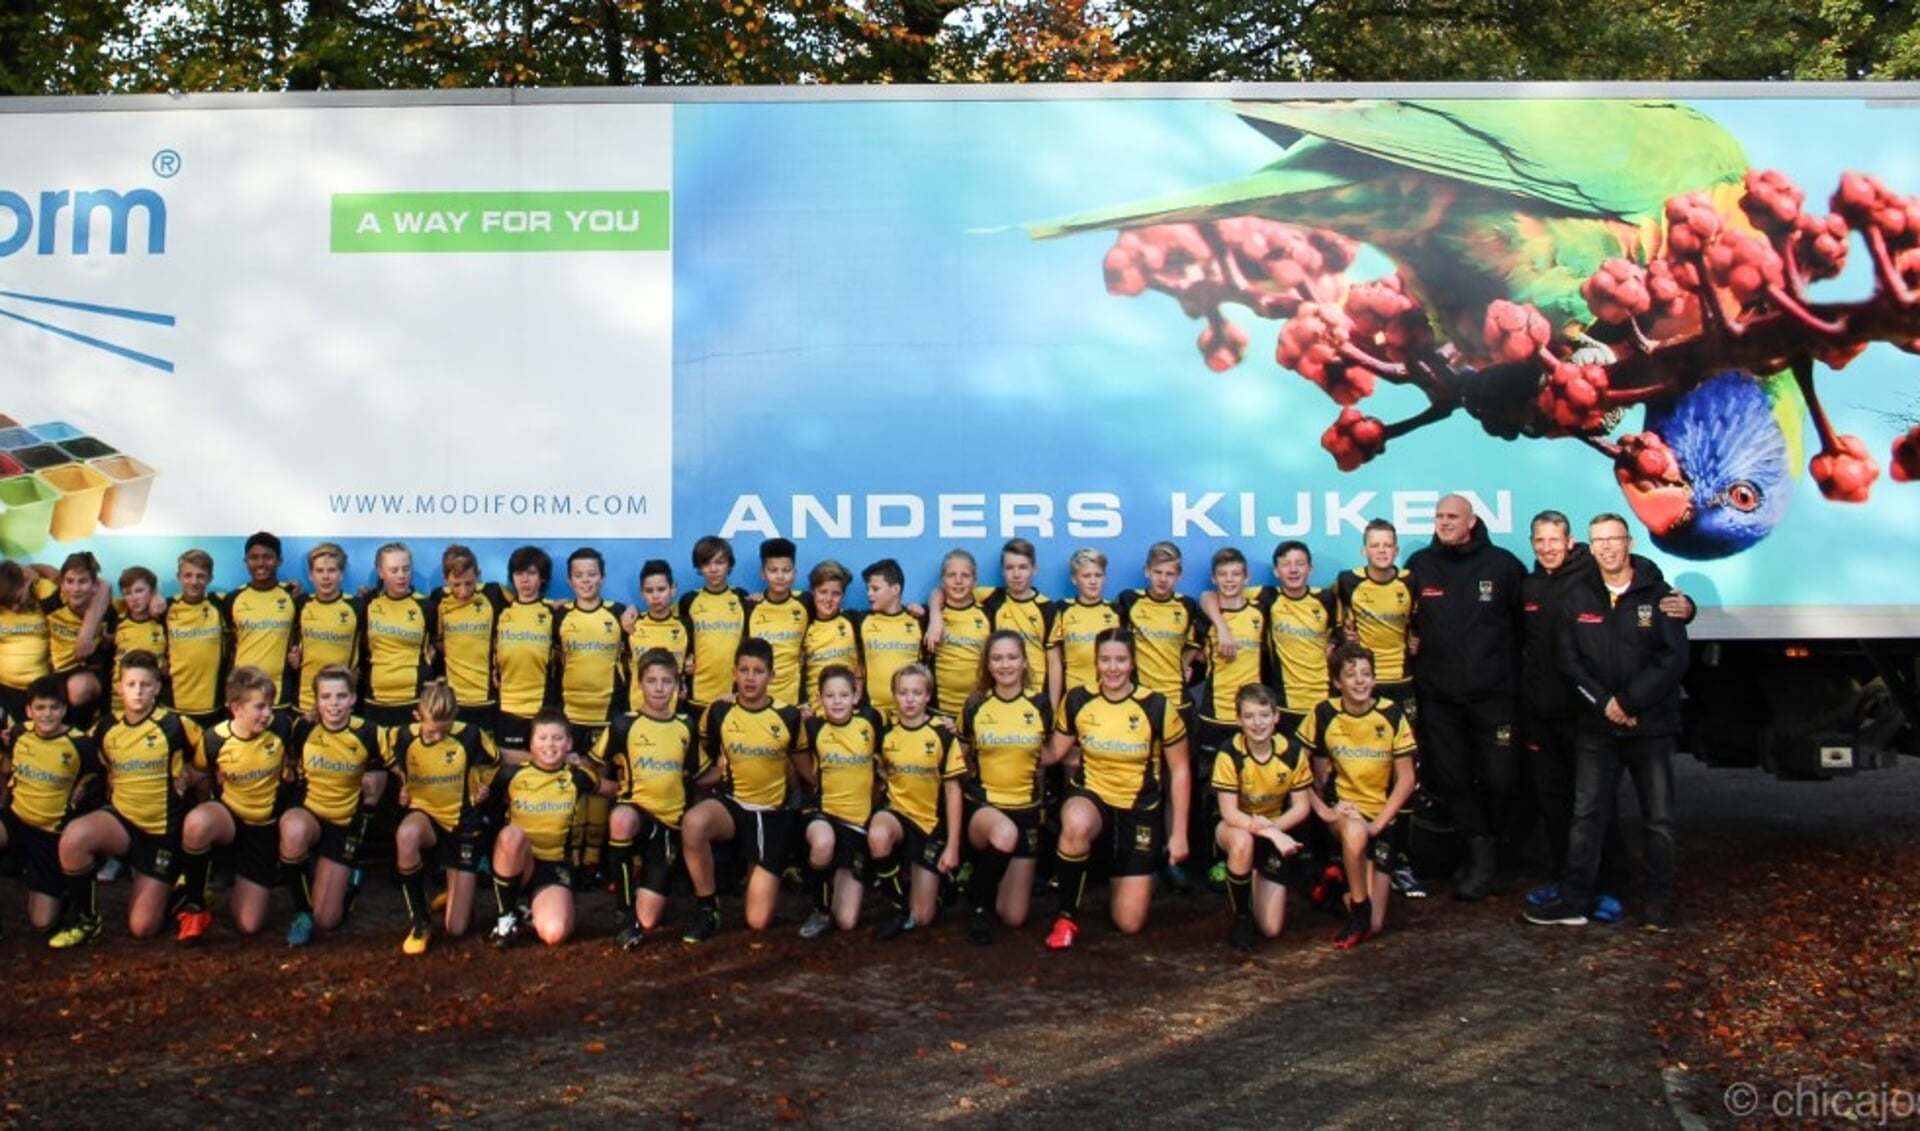 De rugbyjeugd en hun trainers voor een vrachtwagen van sponsor Modiform.